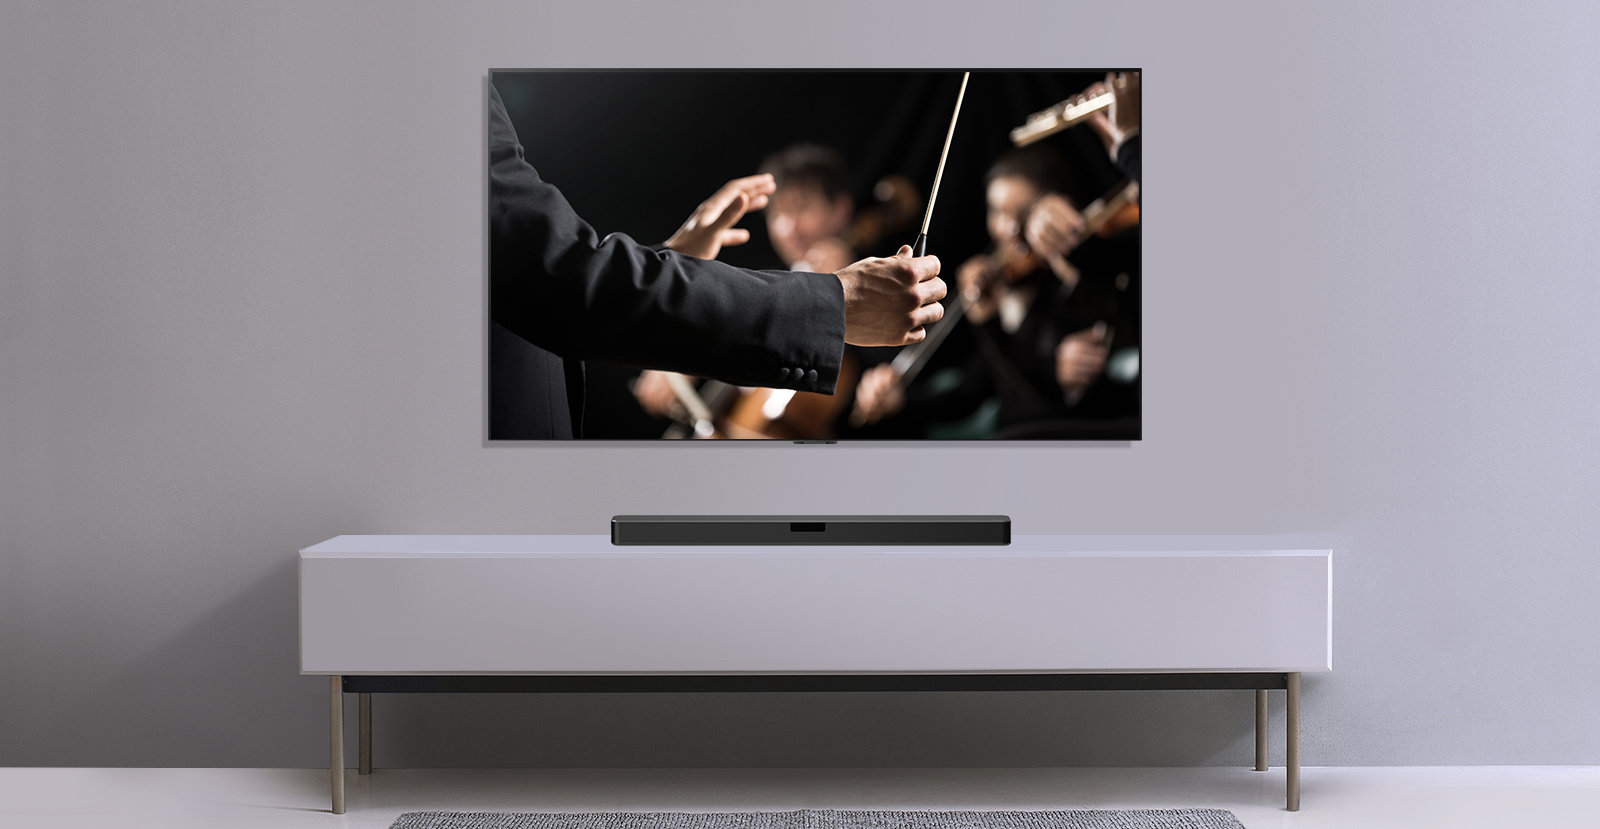 Soundbar LG SN5Y 400W Czarny widok od przodu, stojący pod telewizorem